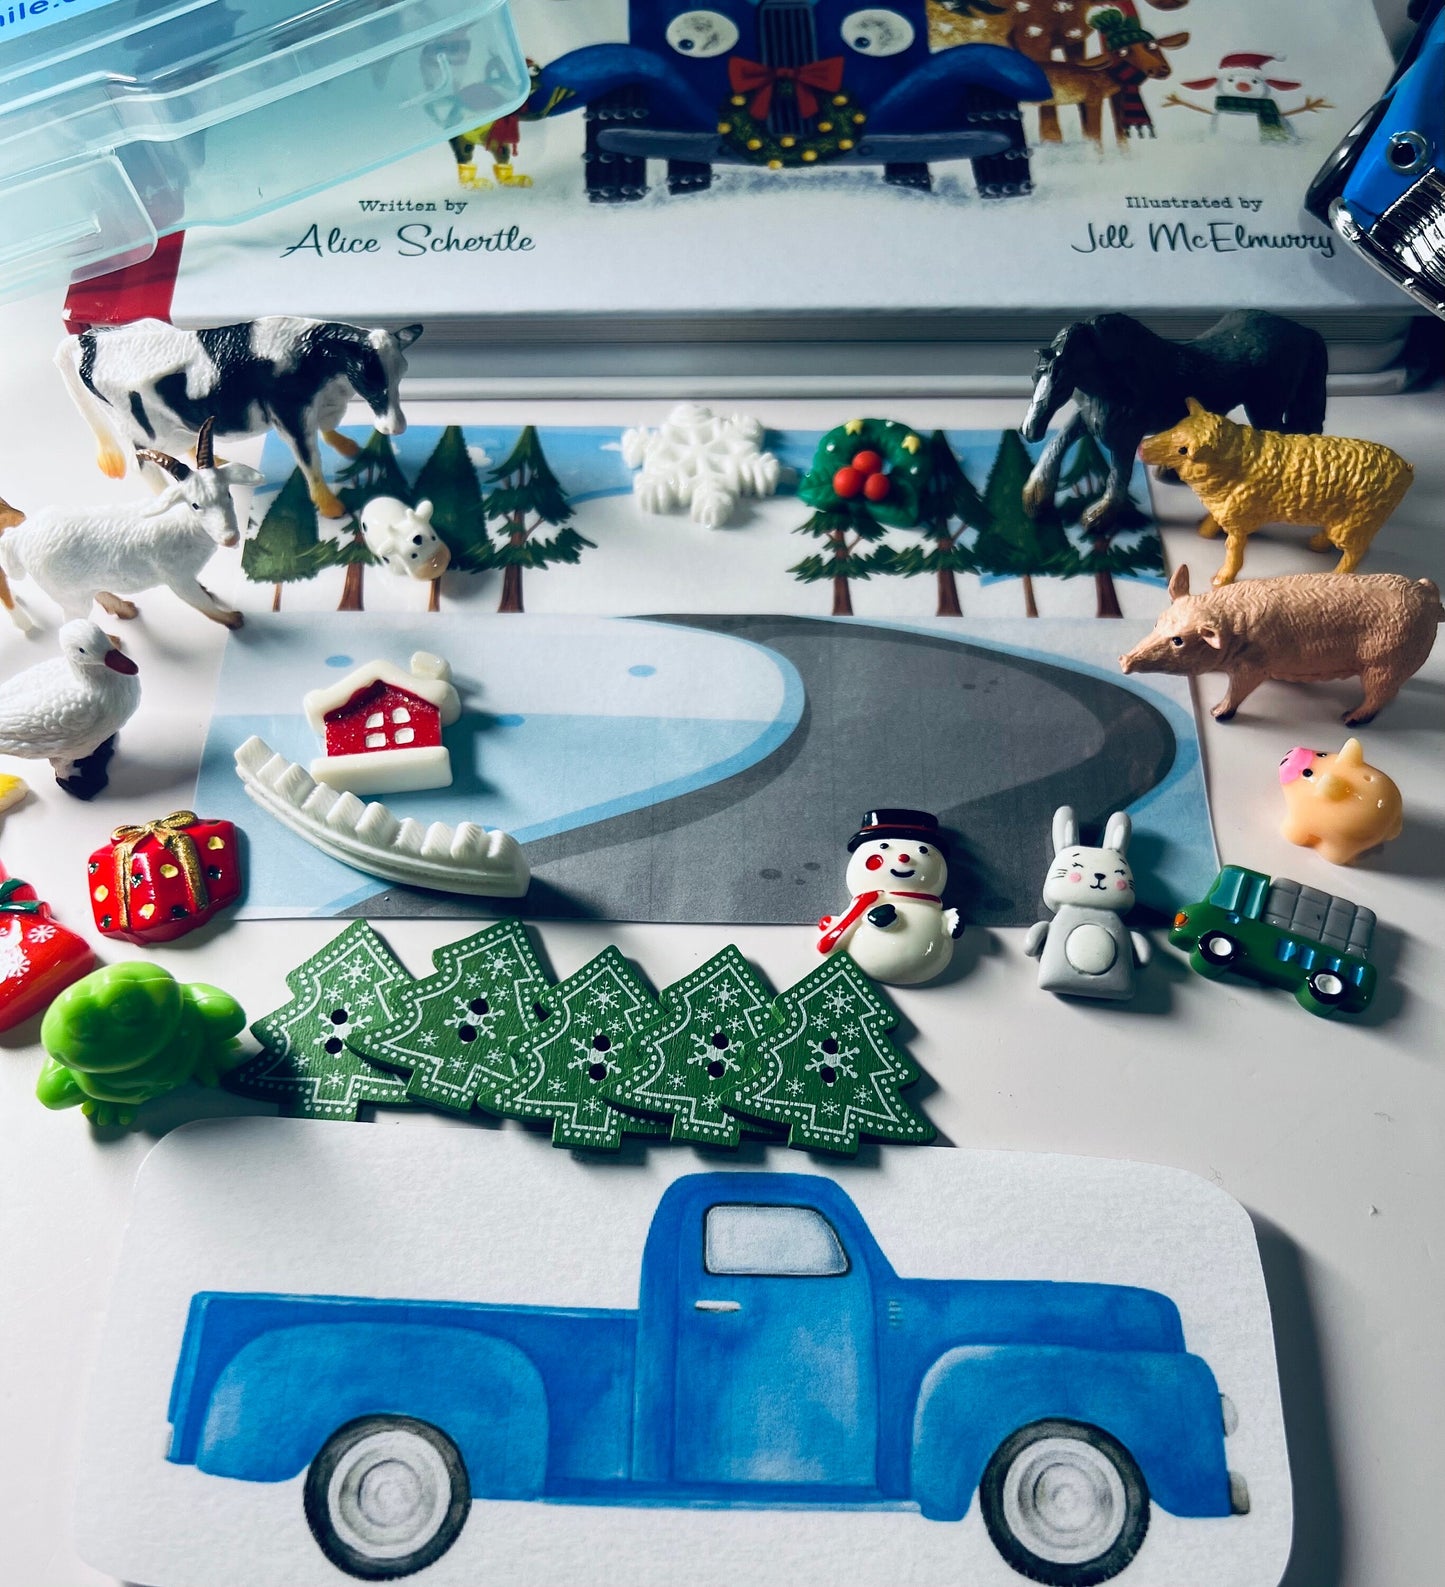 Little Blue Trucks Kit de cuentos navideños y libro-Regalo para niños-Objetos de cuento para Little Blue Truck-Mini objetos de logopedia-Kit de cuentos